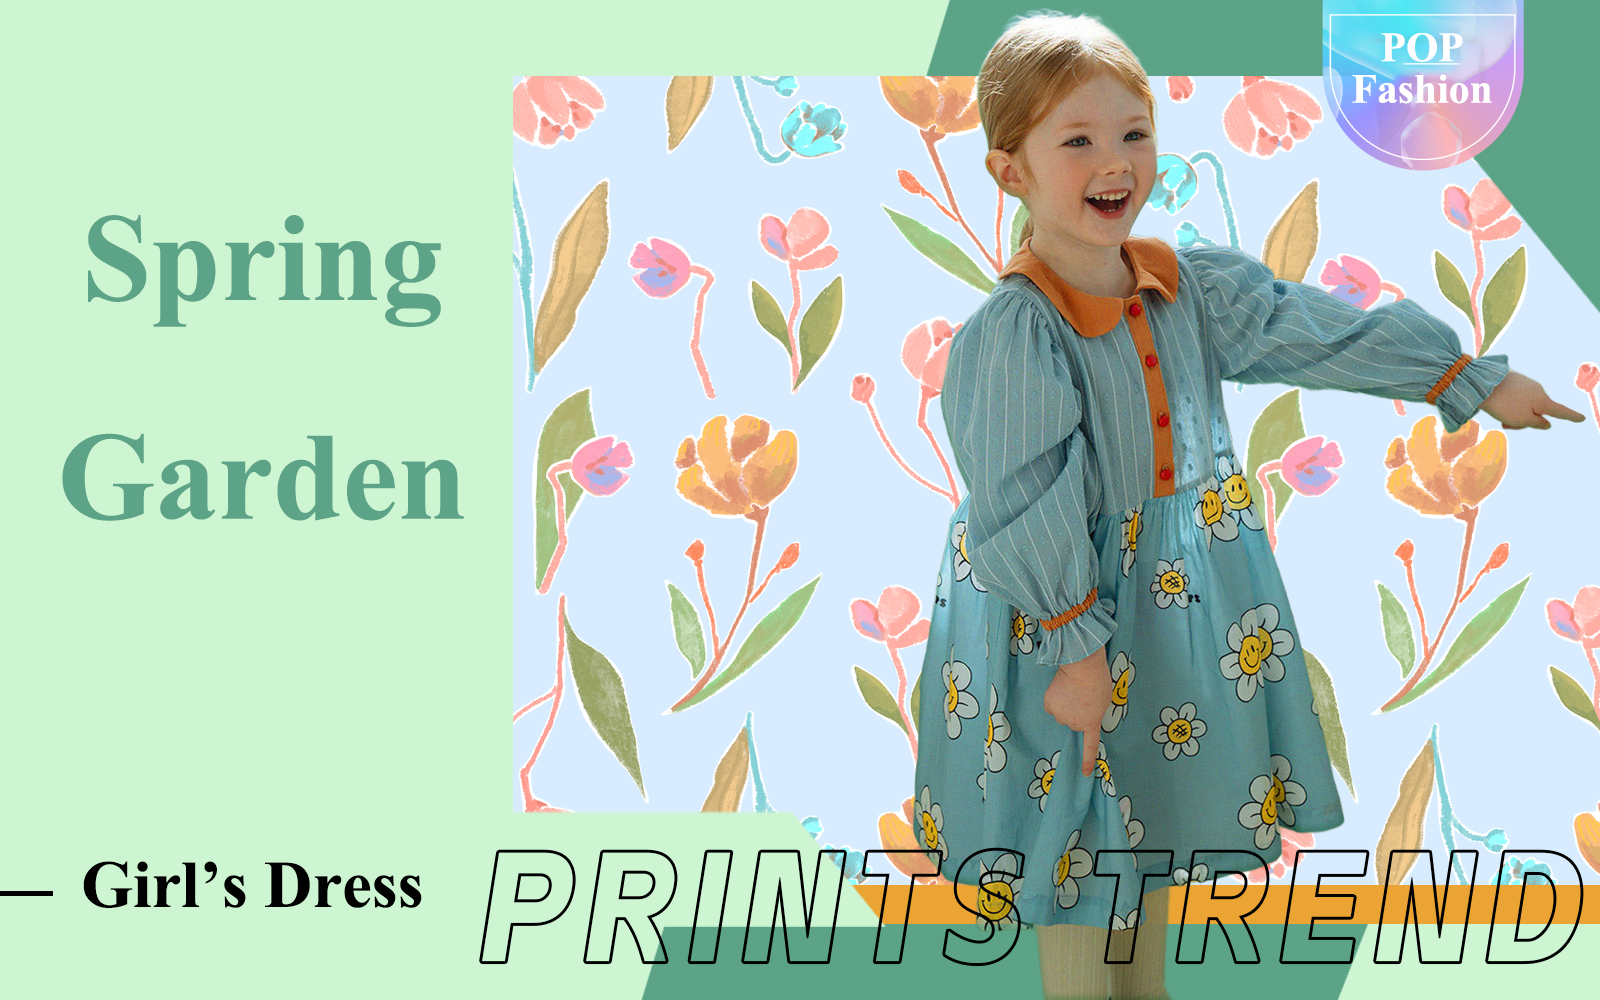 Spring Garden -- The Pattern Trend for Girls' Dress